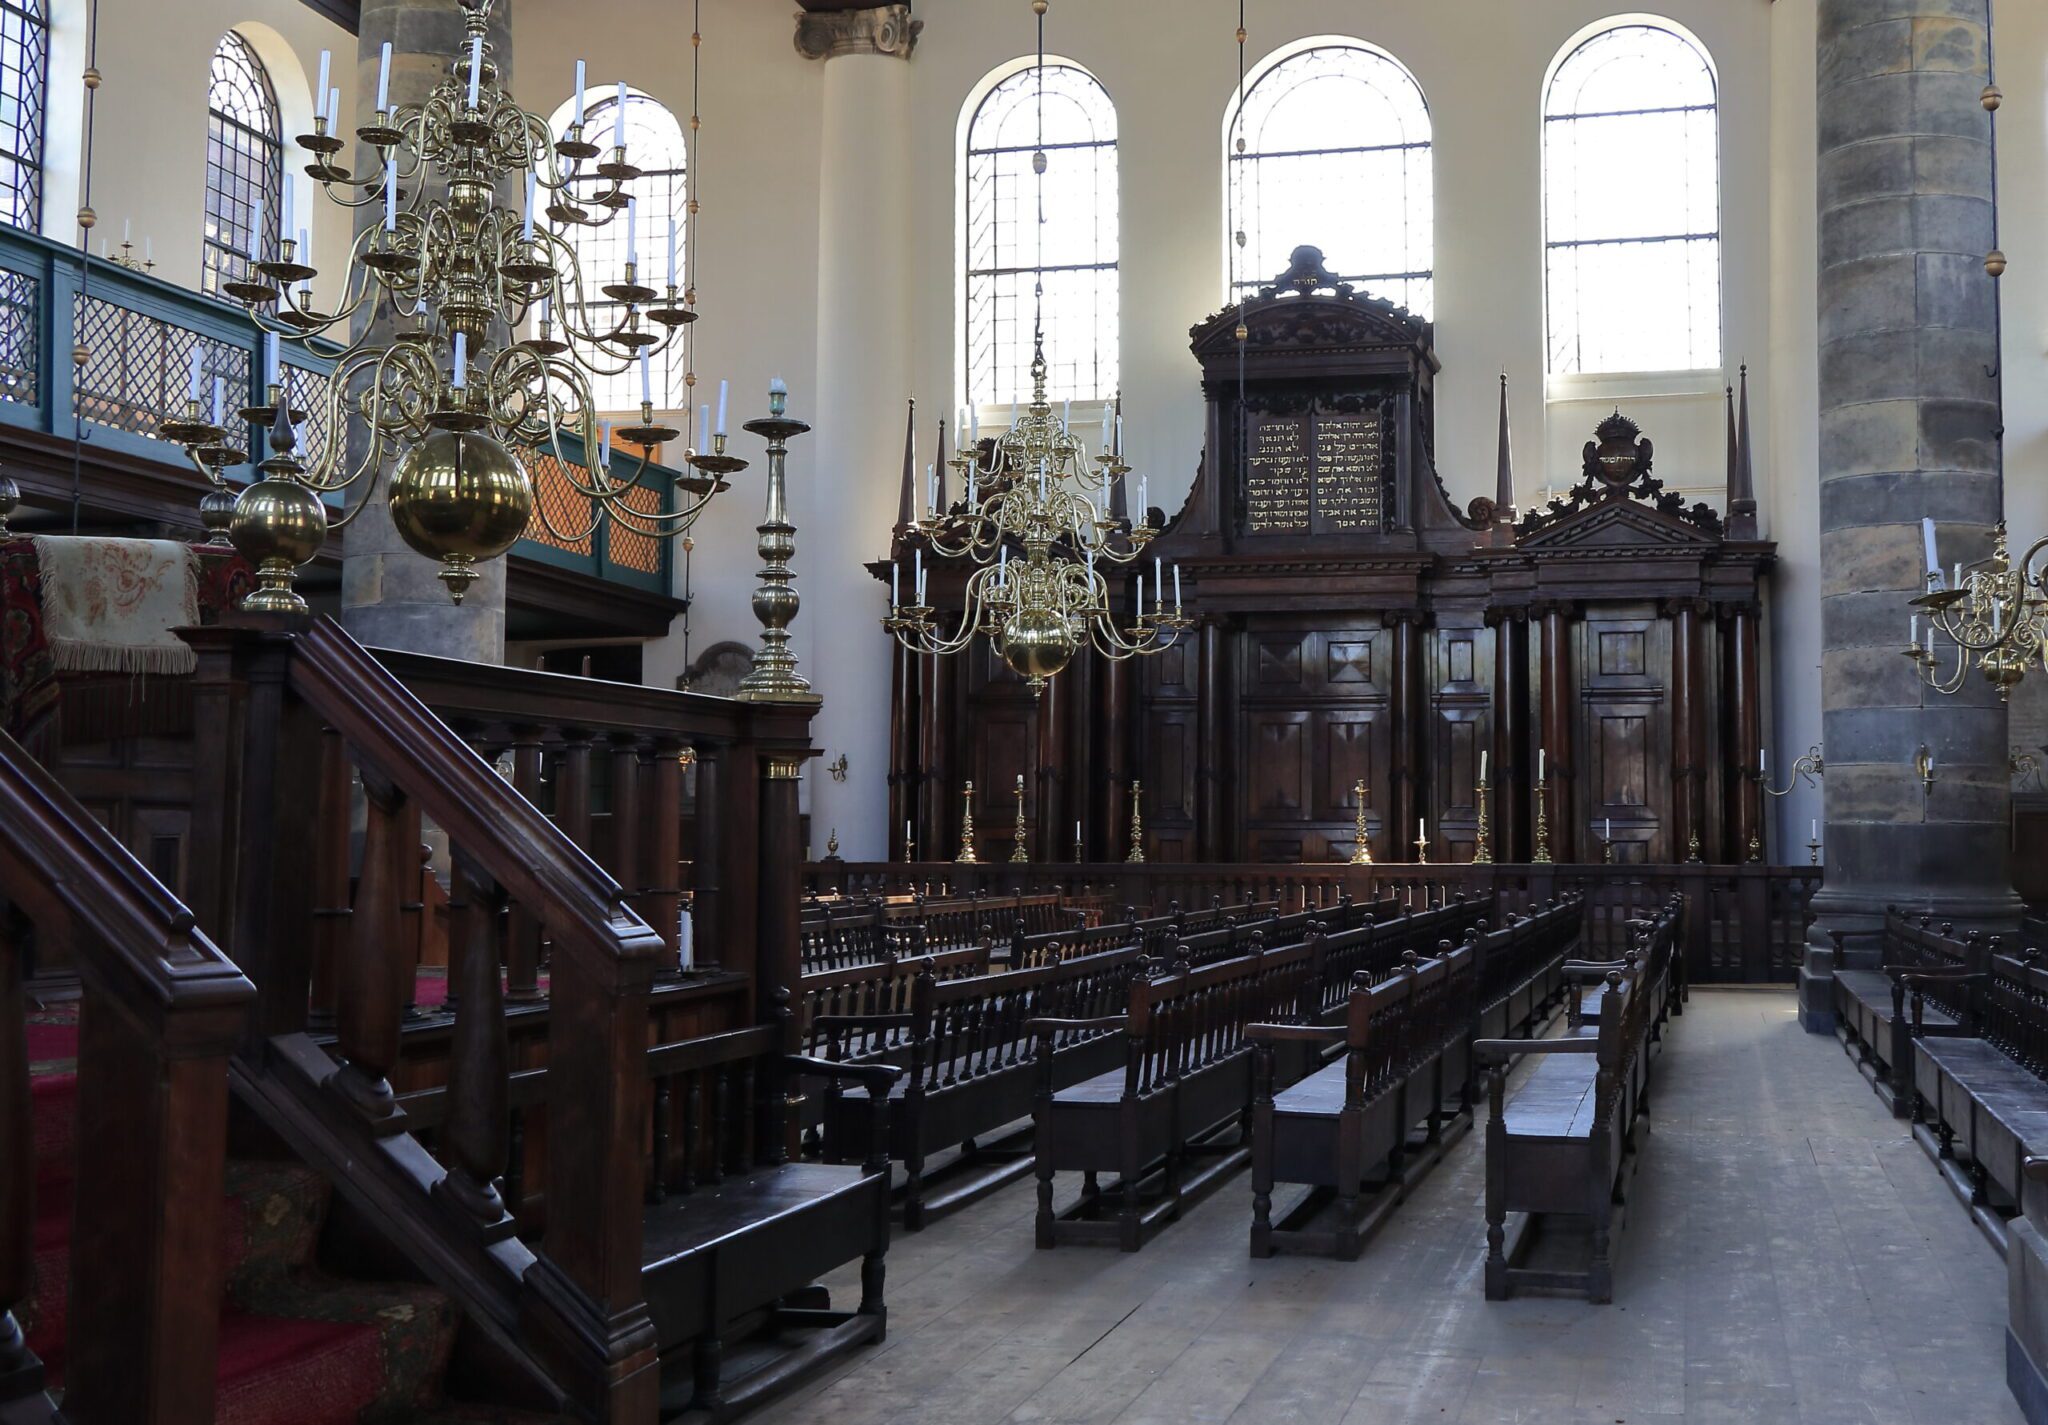 A synagogue's interior